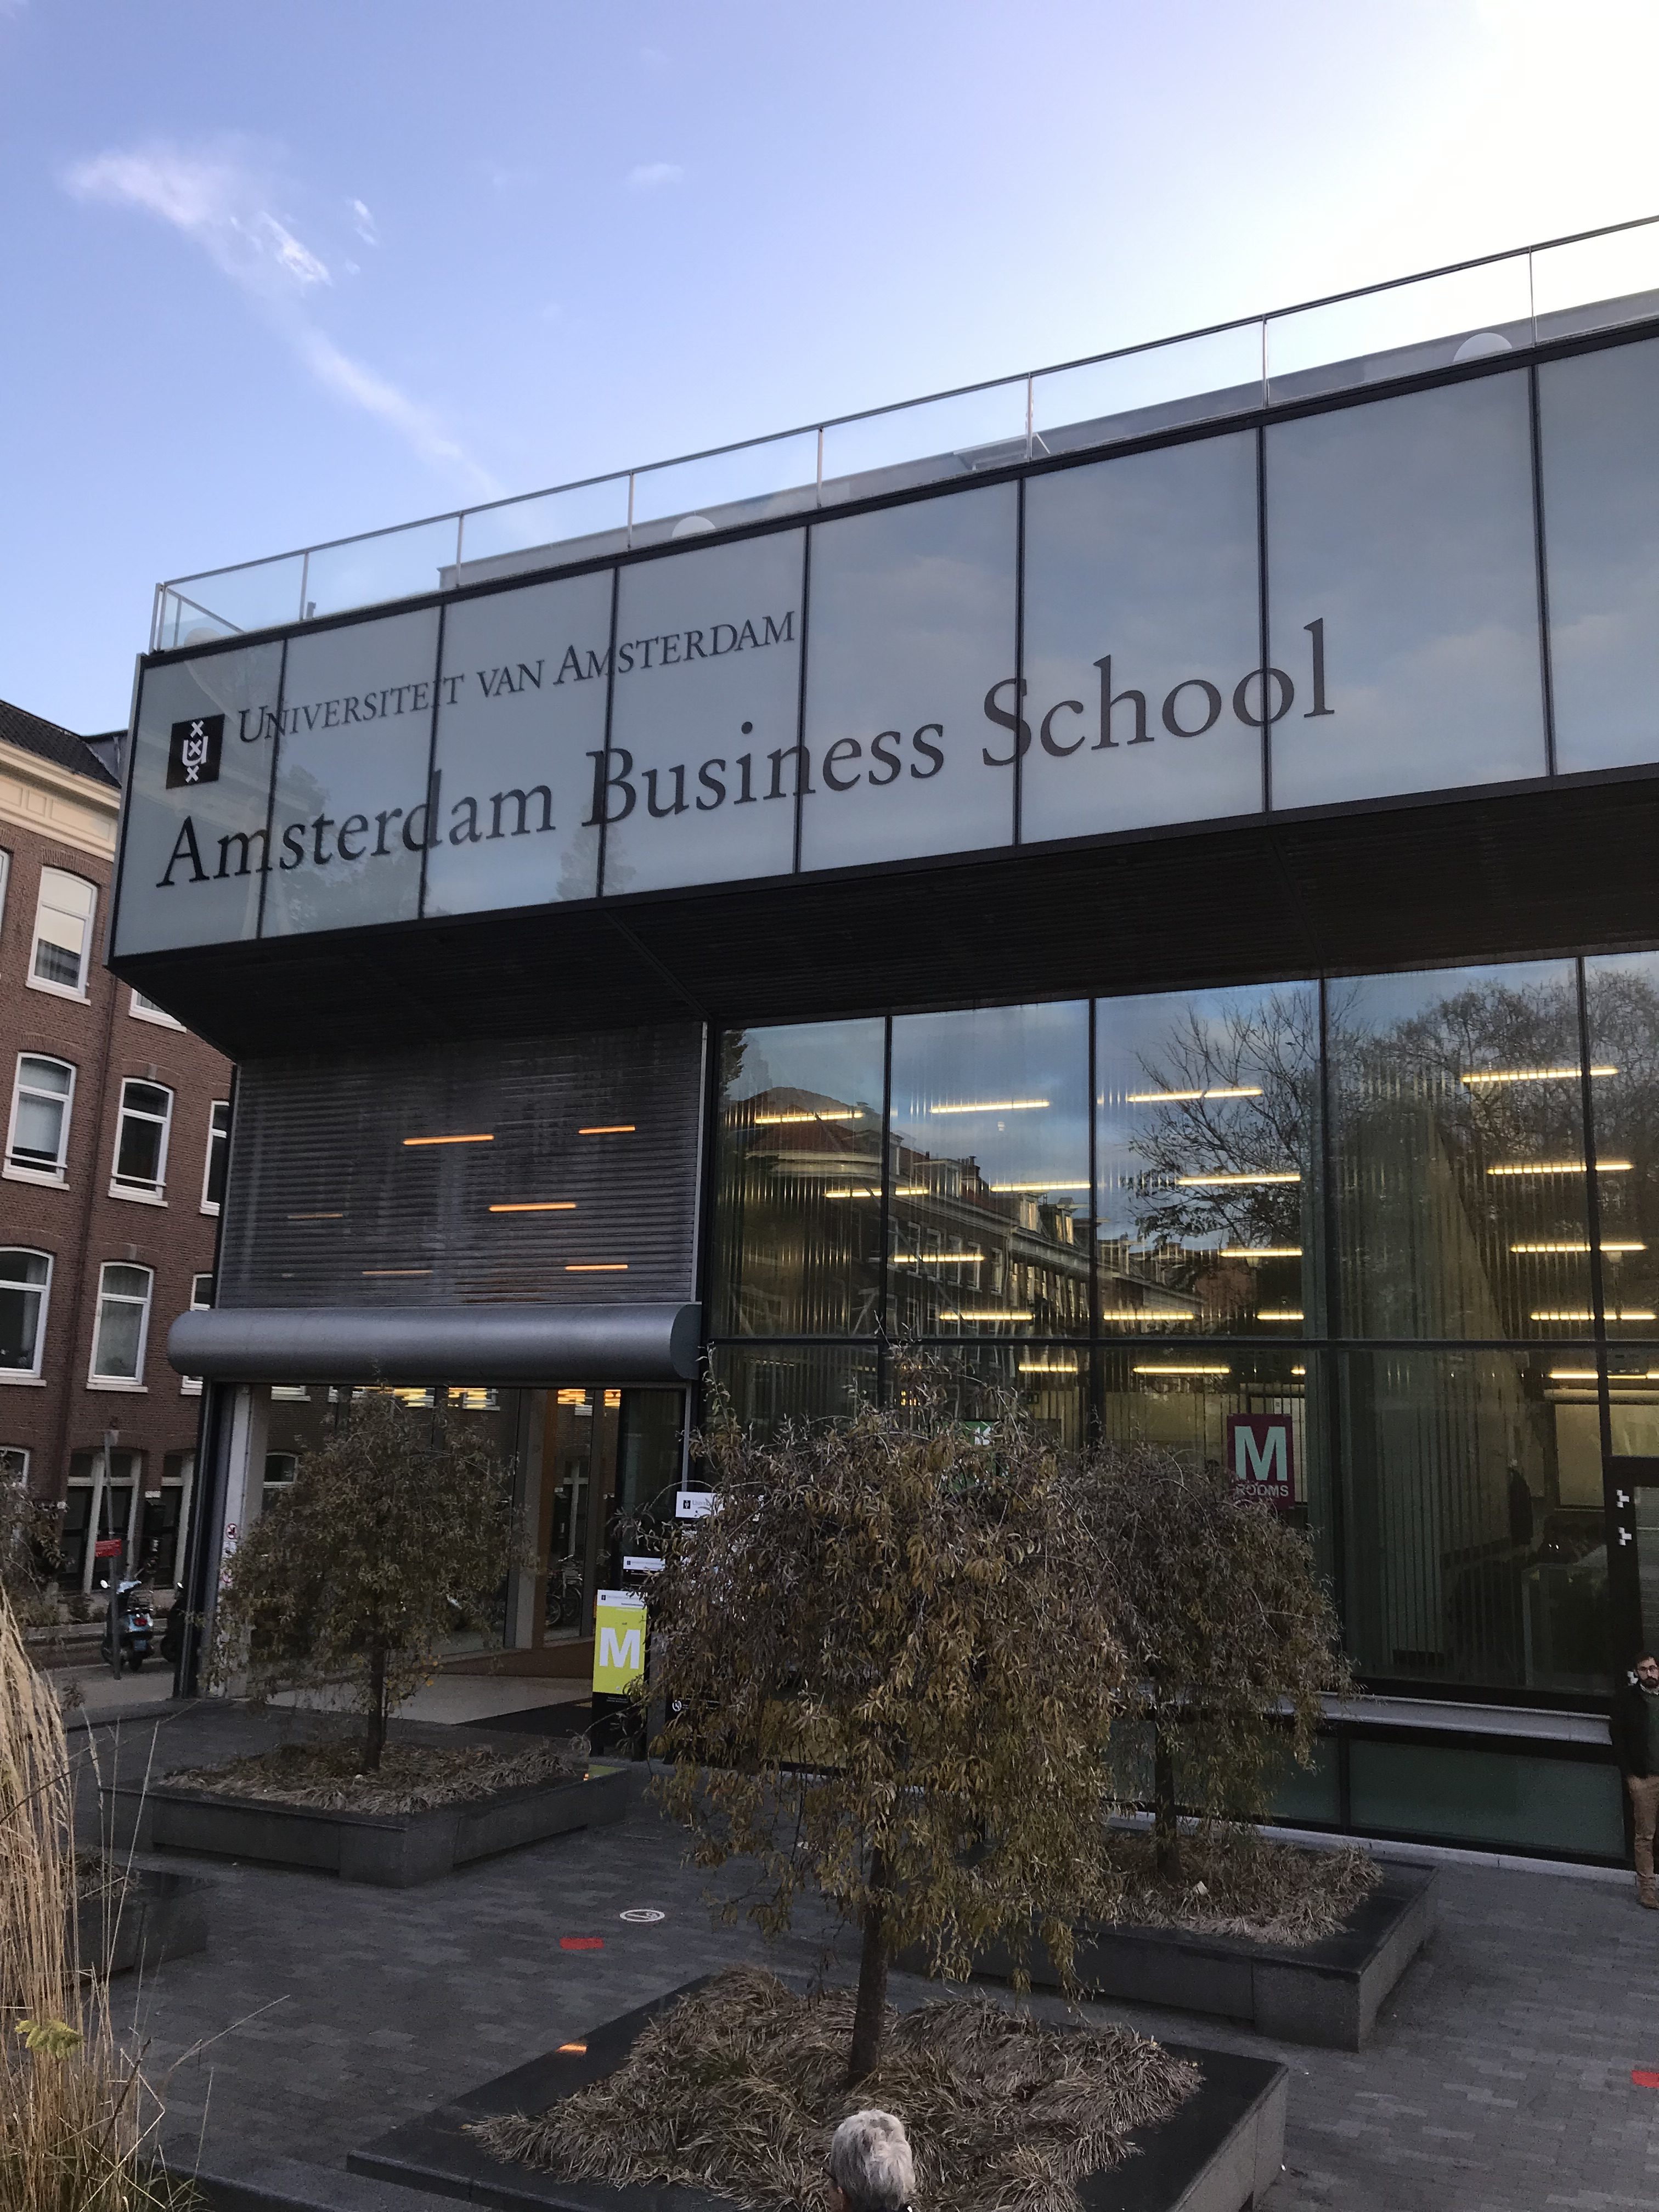 Entrén till Amsterdam Business School